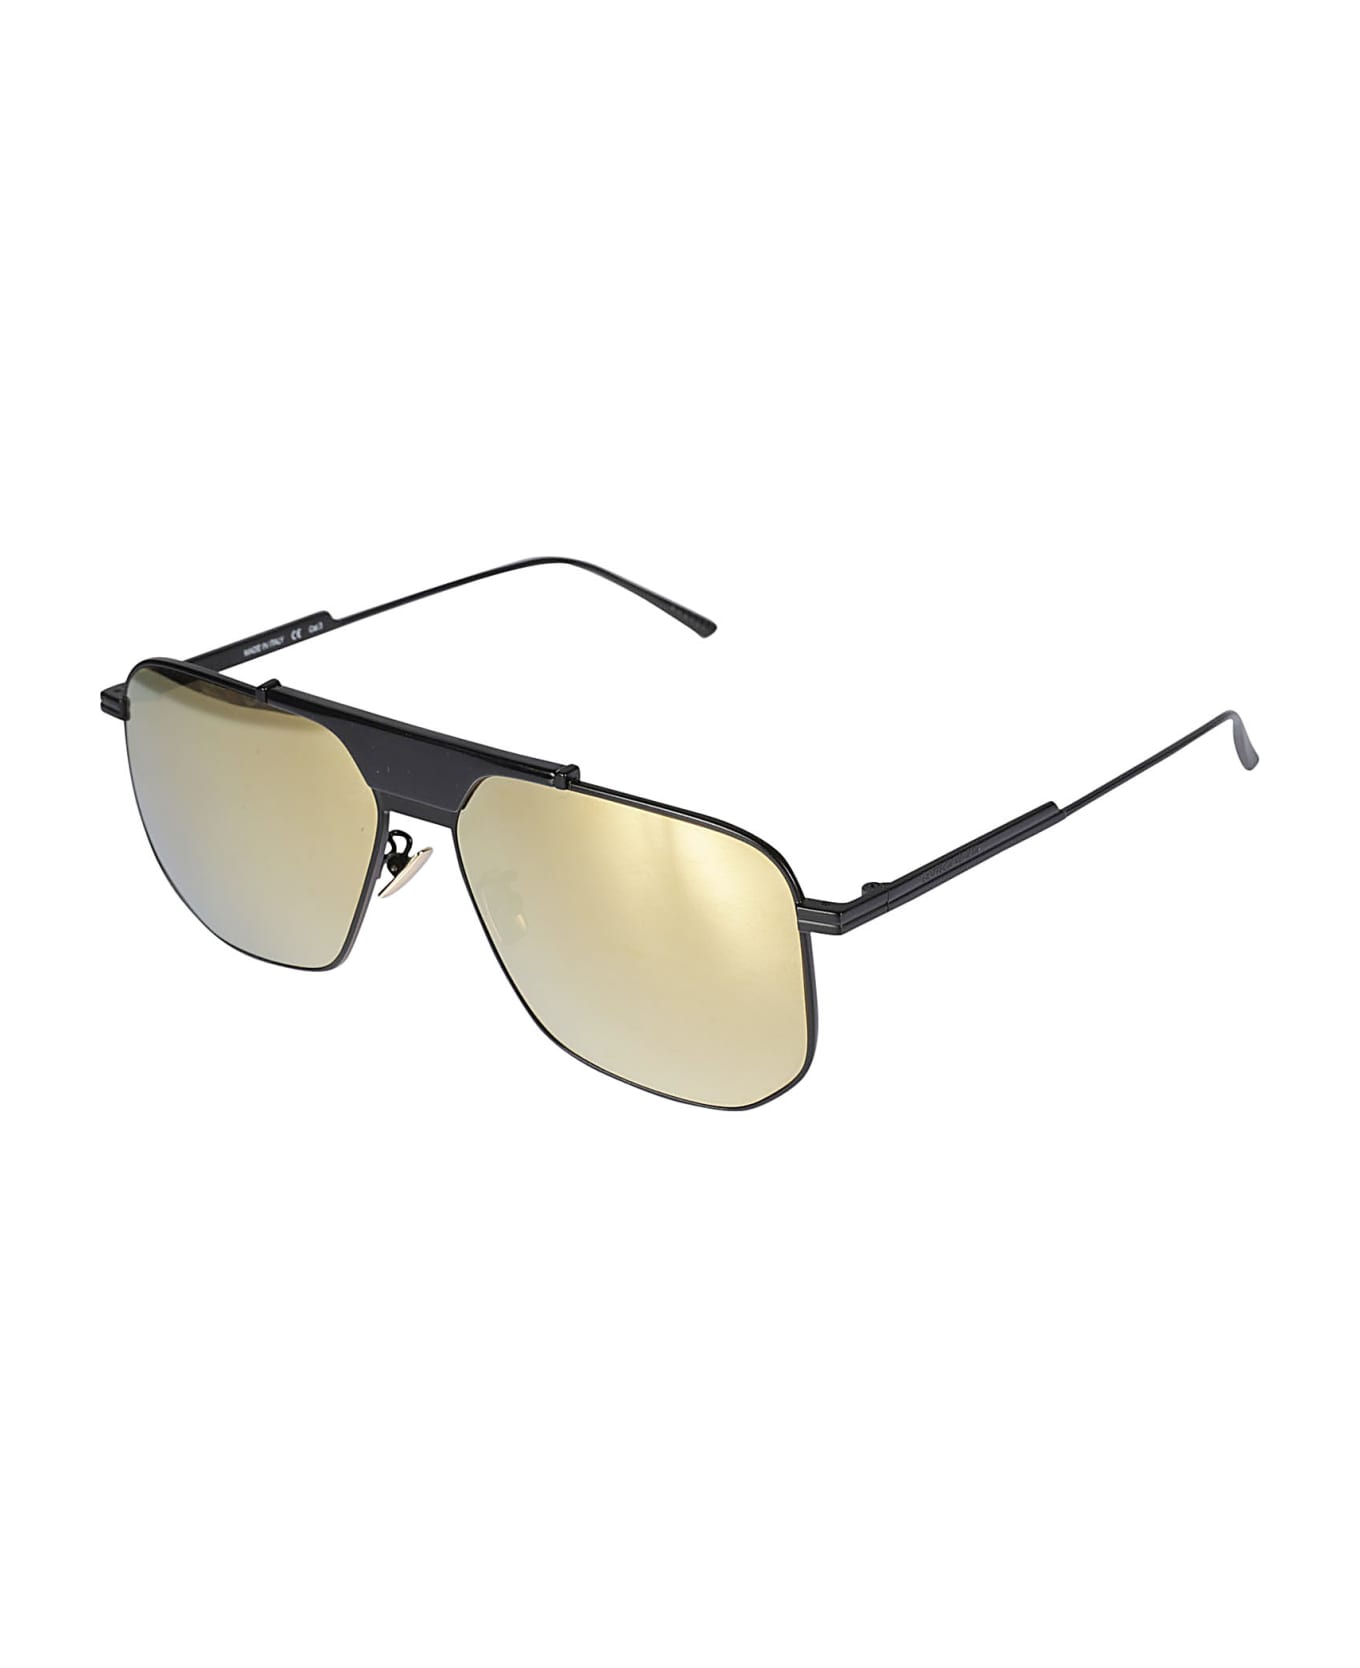 Bottega Veneta Eyewear Hexagonal-framed Sunglasses - 005 black black gold